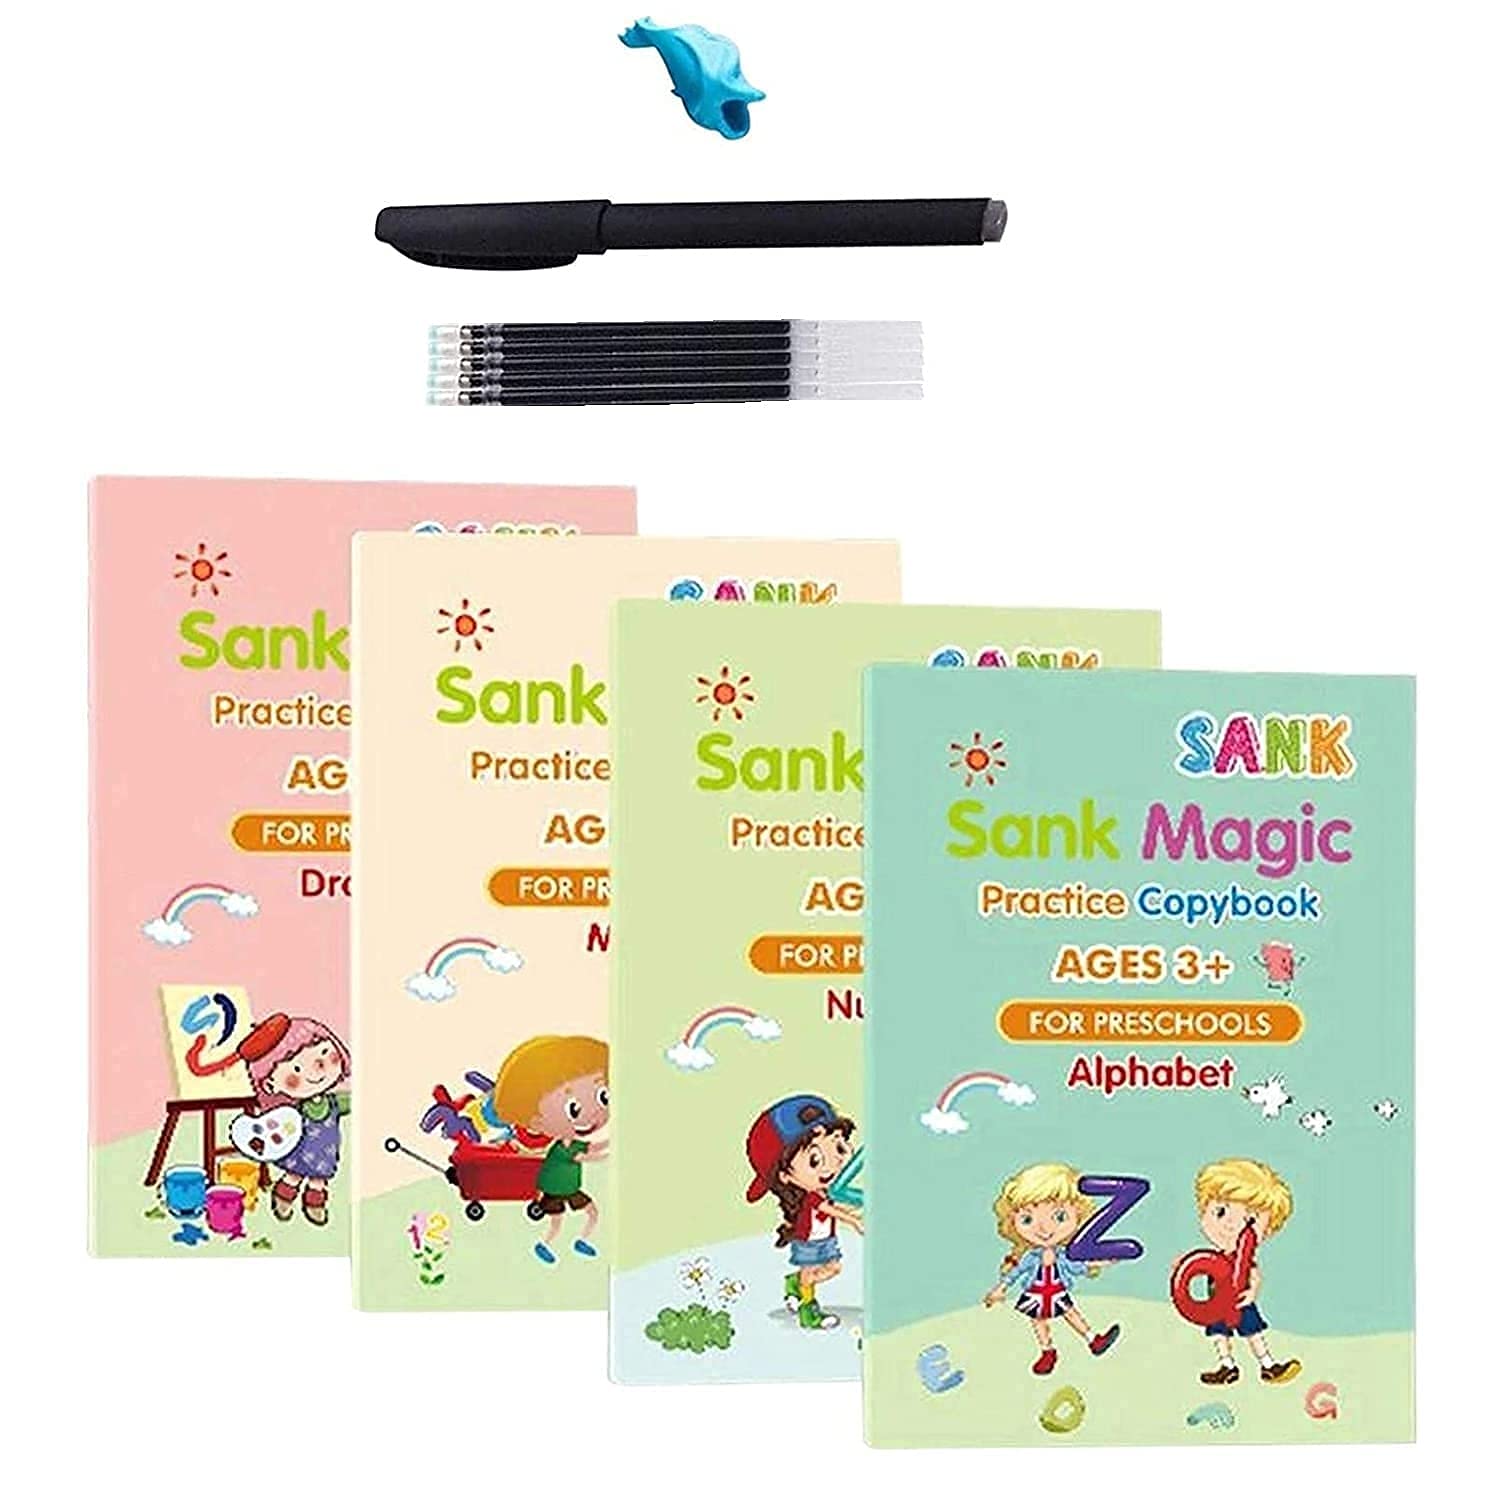 Sank Magic Practice Copybook, Reusable Magic Practice Copybook for Kids,  Magic Handwriting Calligraphy Book DRAWING (WITH PENS)